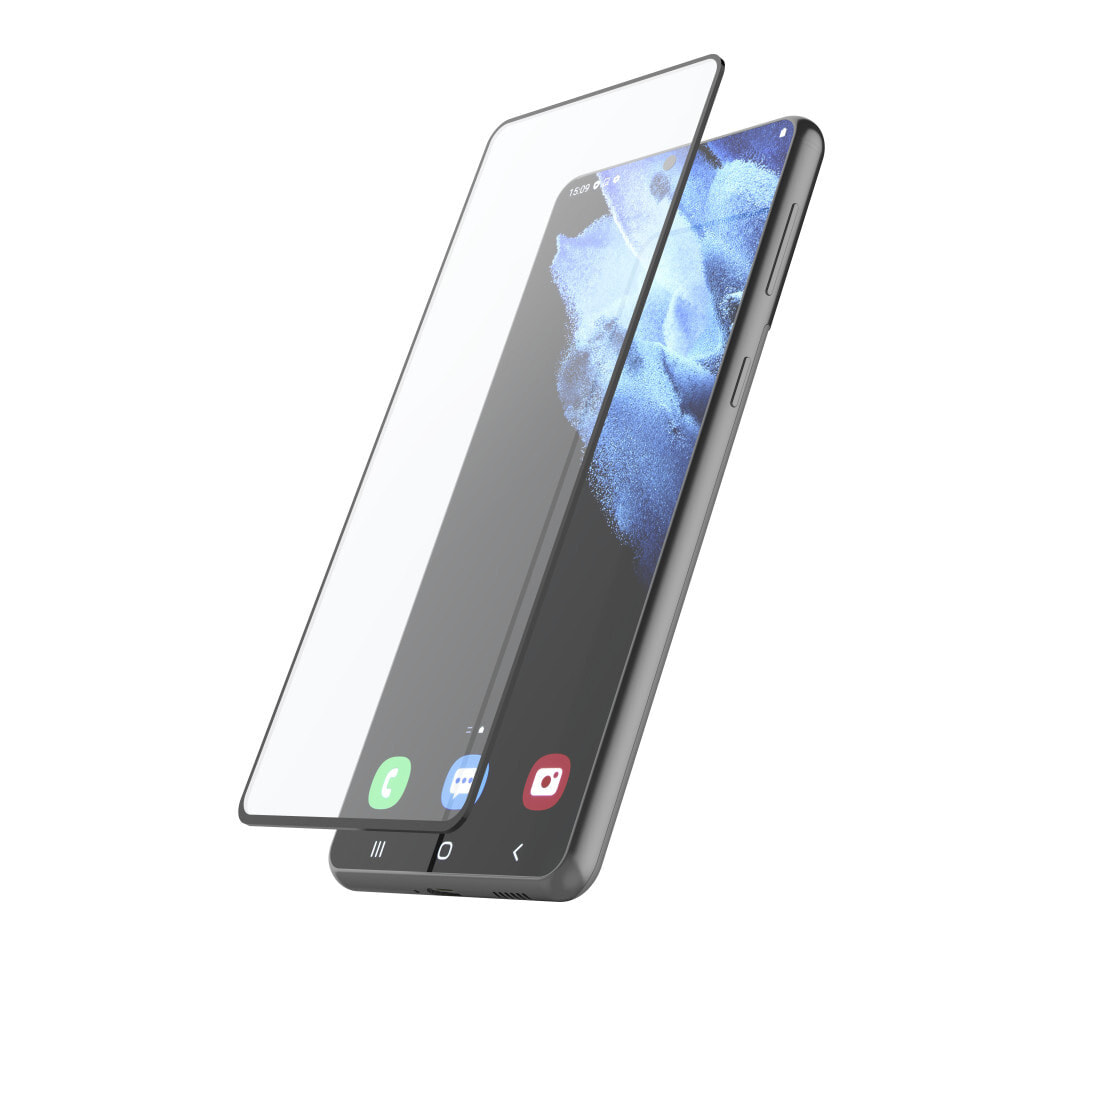 Hama 00213065 защитная пленка / стекло для мобильного телефона Прозрачная защитная пленка Samsung 1 шт